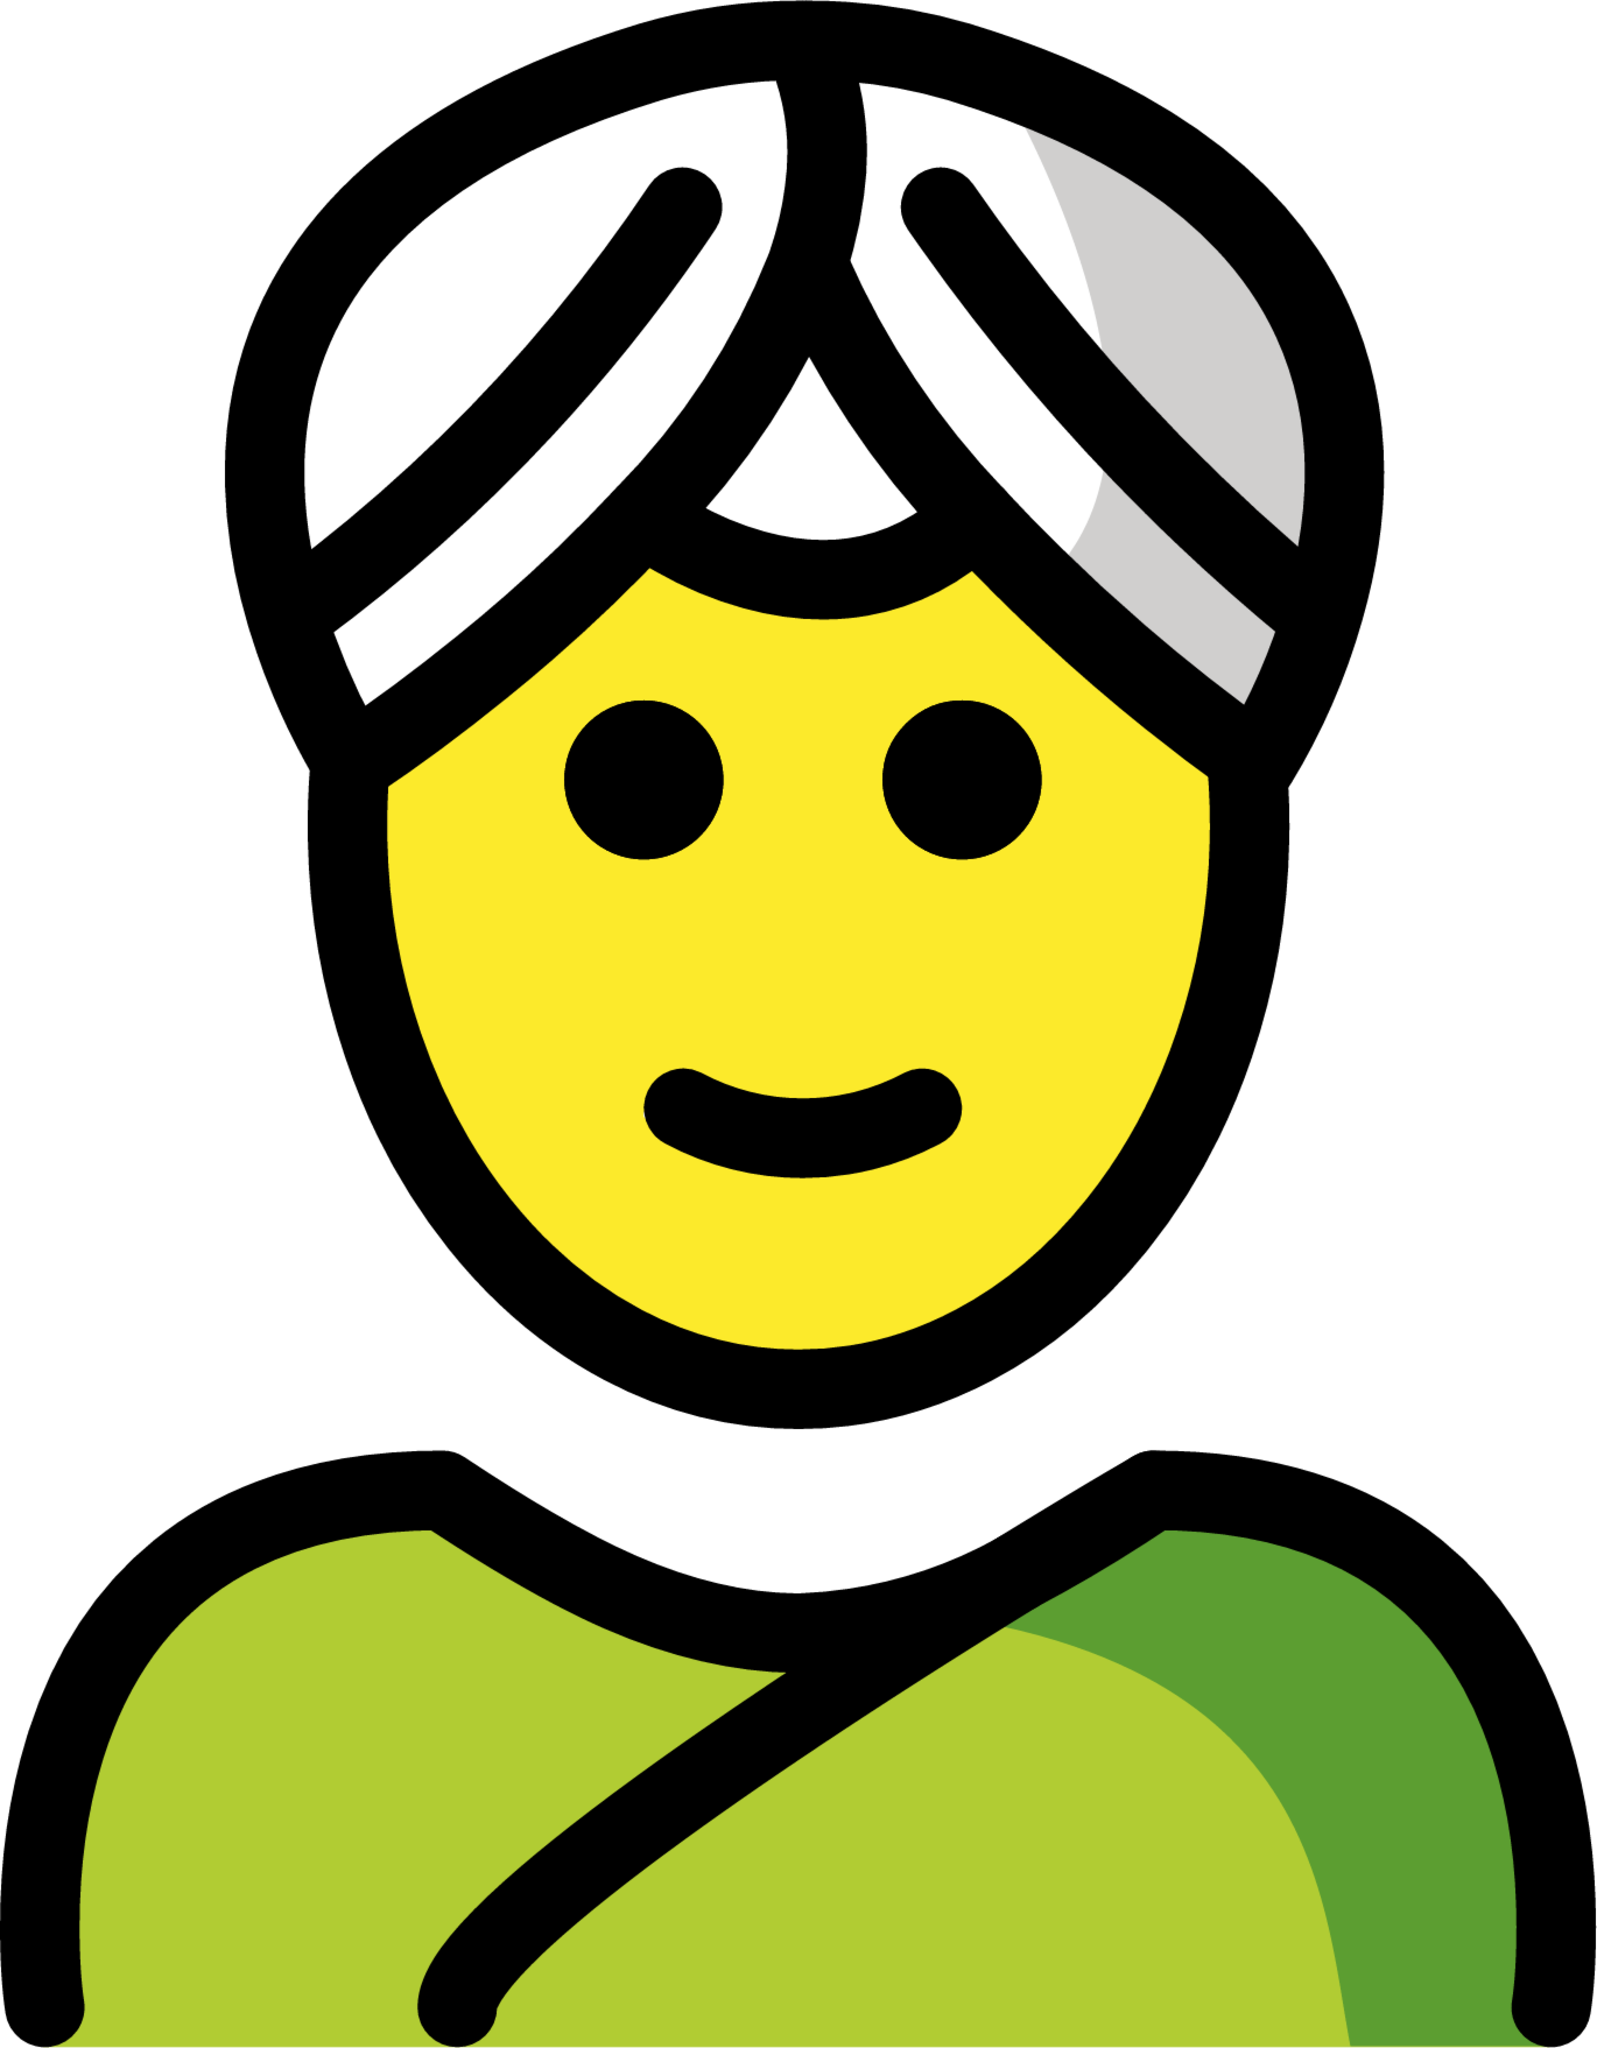 woman wearing turban emoji